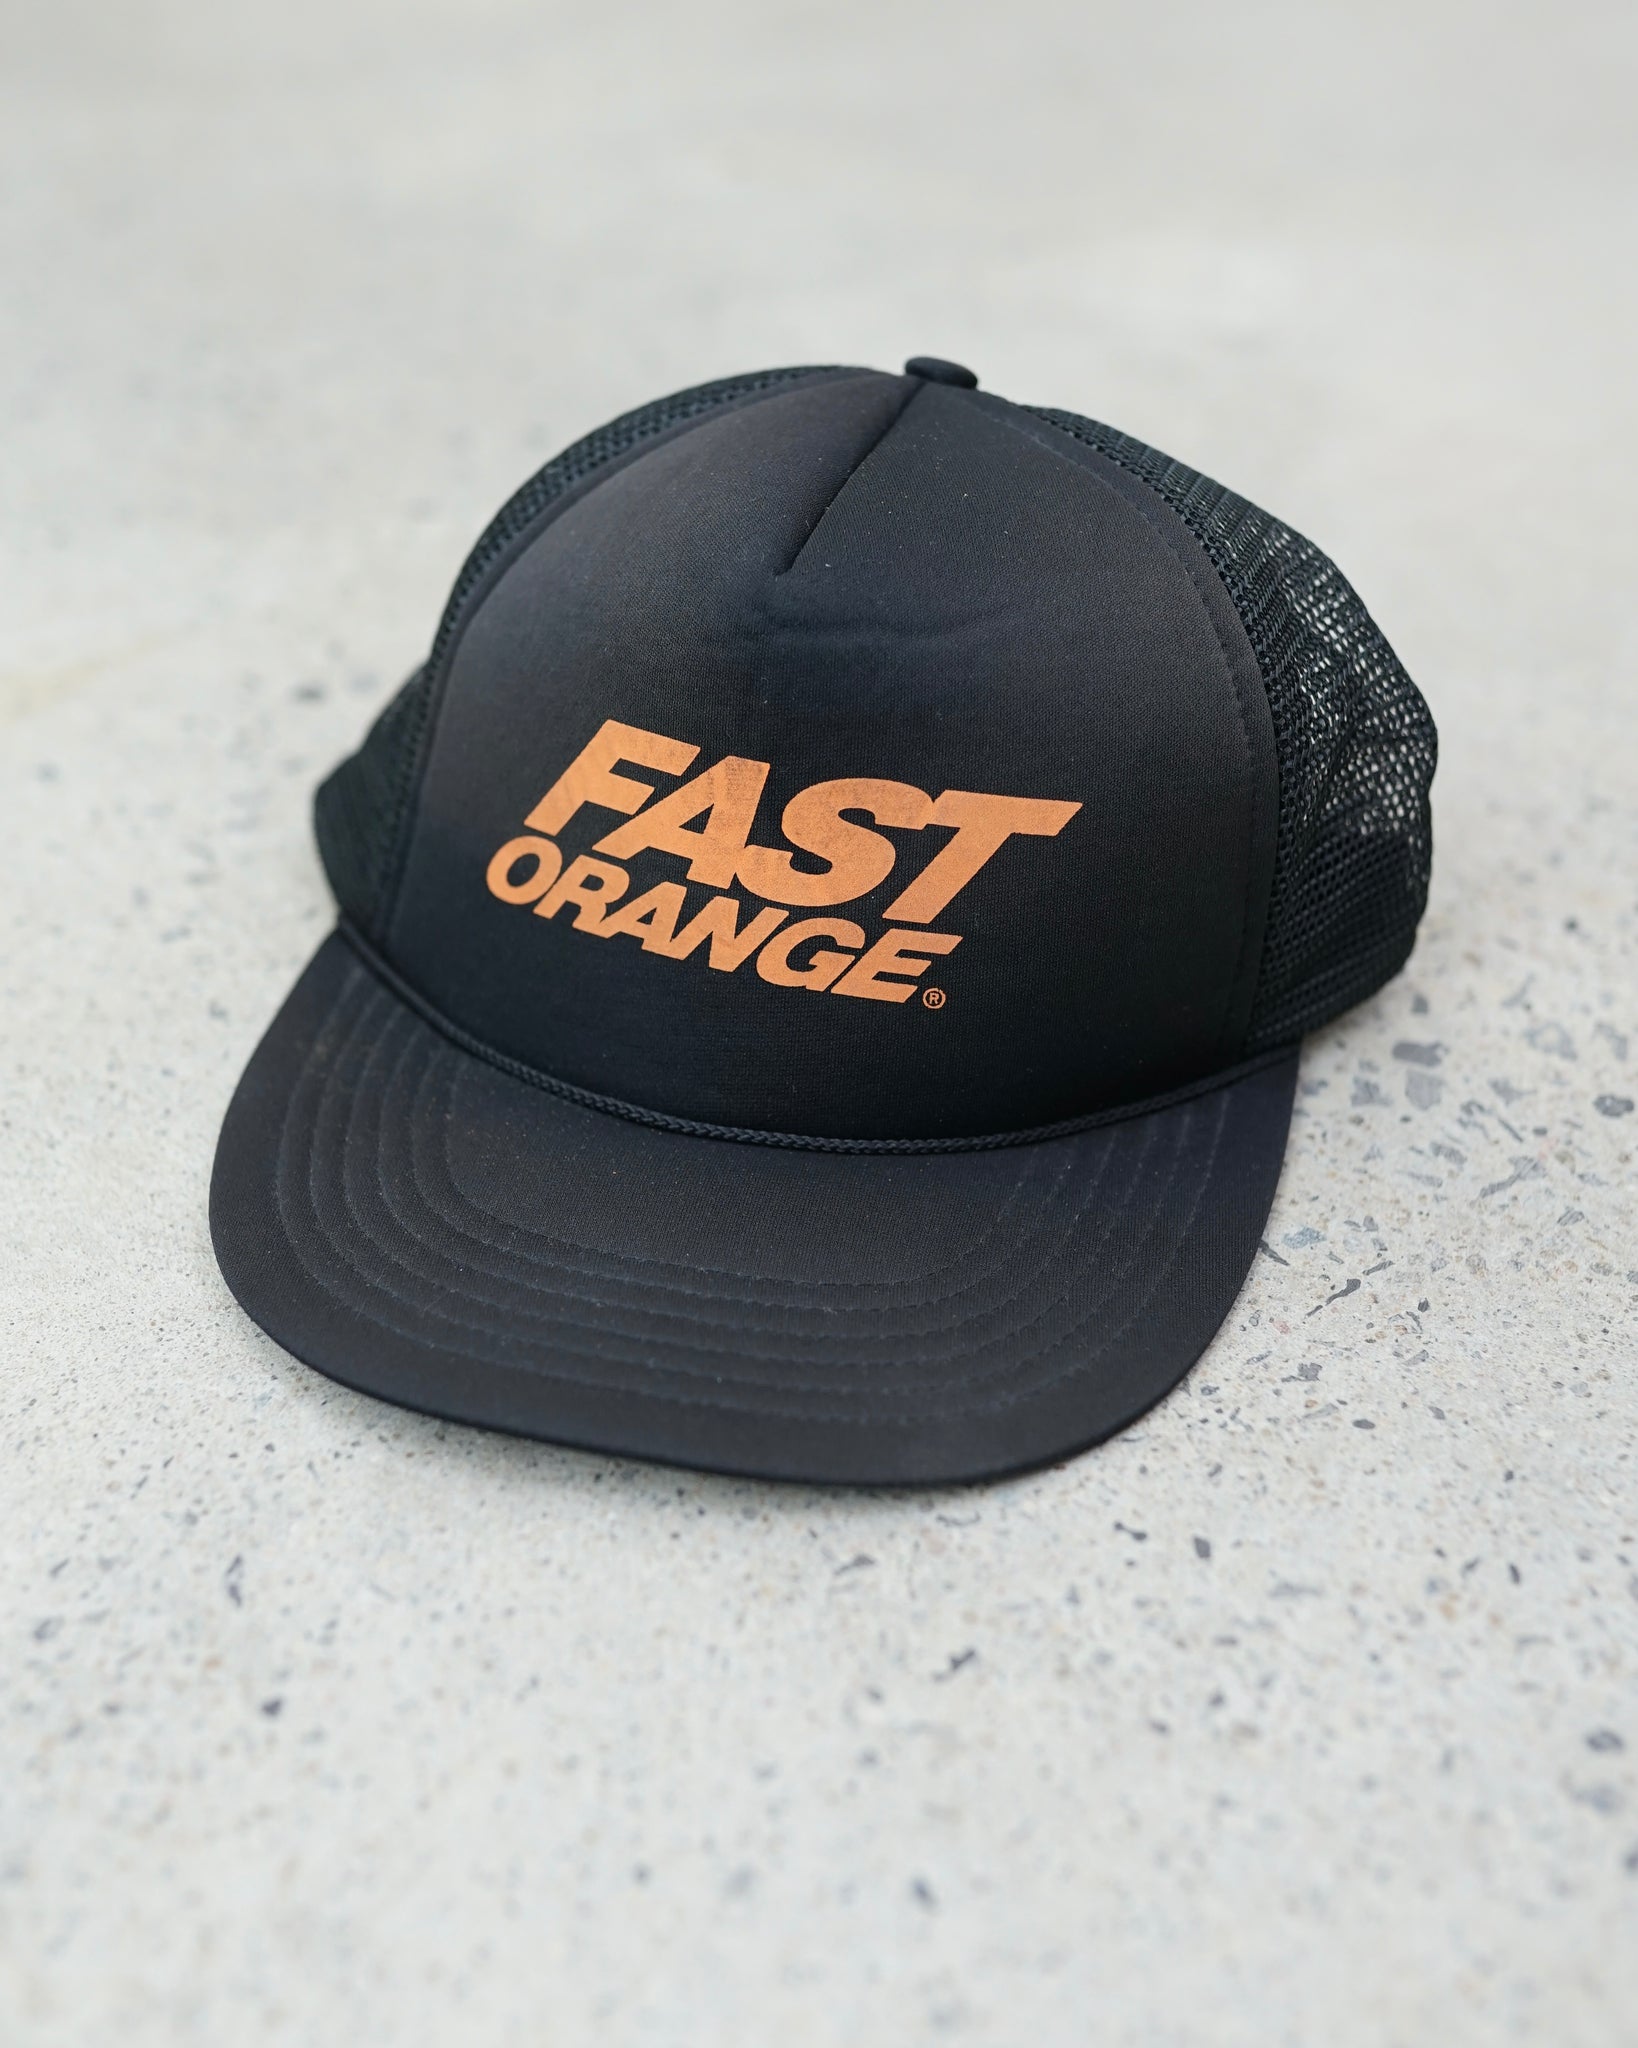 fast orange trucker hat